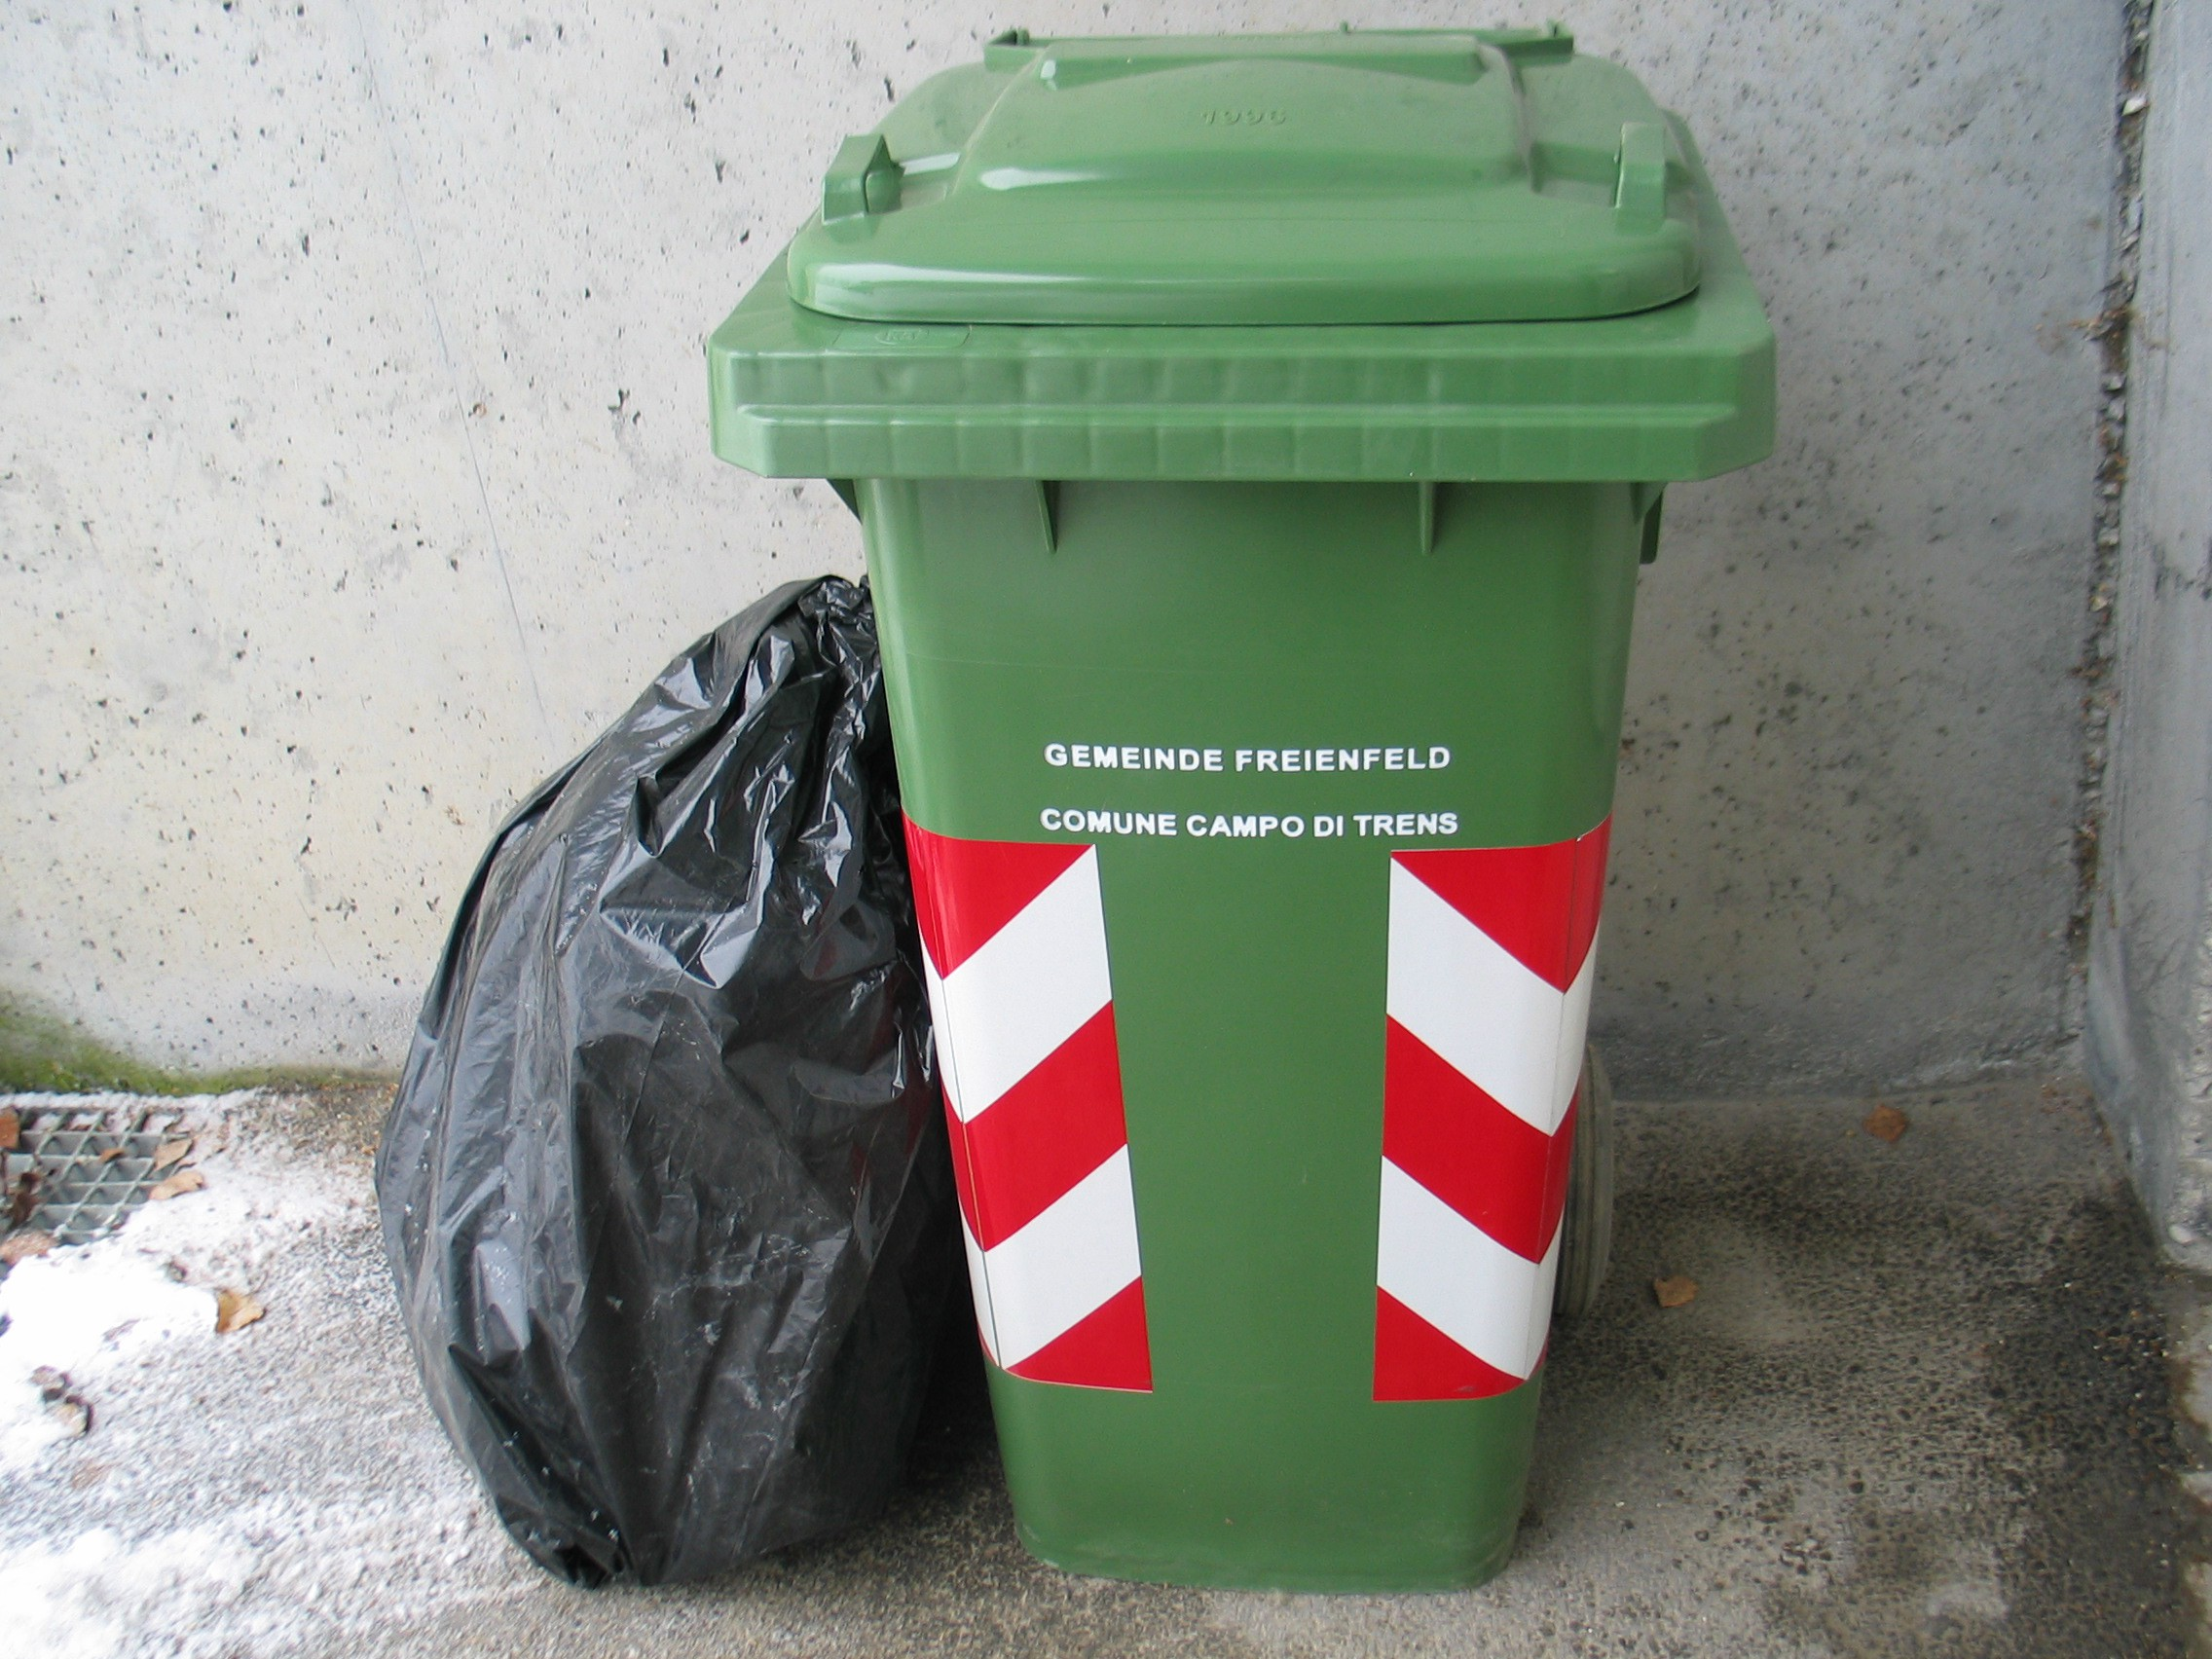 Um die vollständige Entleerung des Restmüllcontainers zu gewährleisten, darf kein Müll lose in den Container geworfen werden (Bitte Plastiksäcke verwenden)!